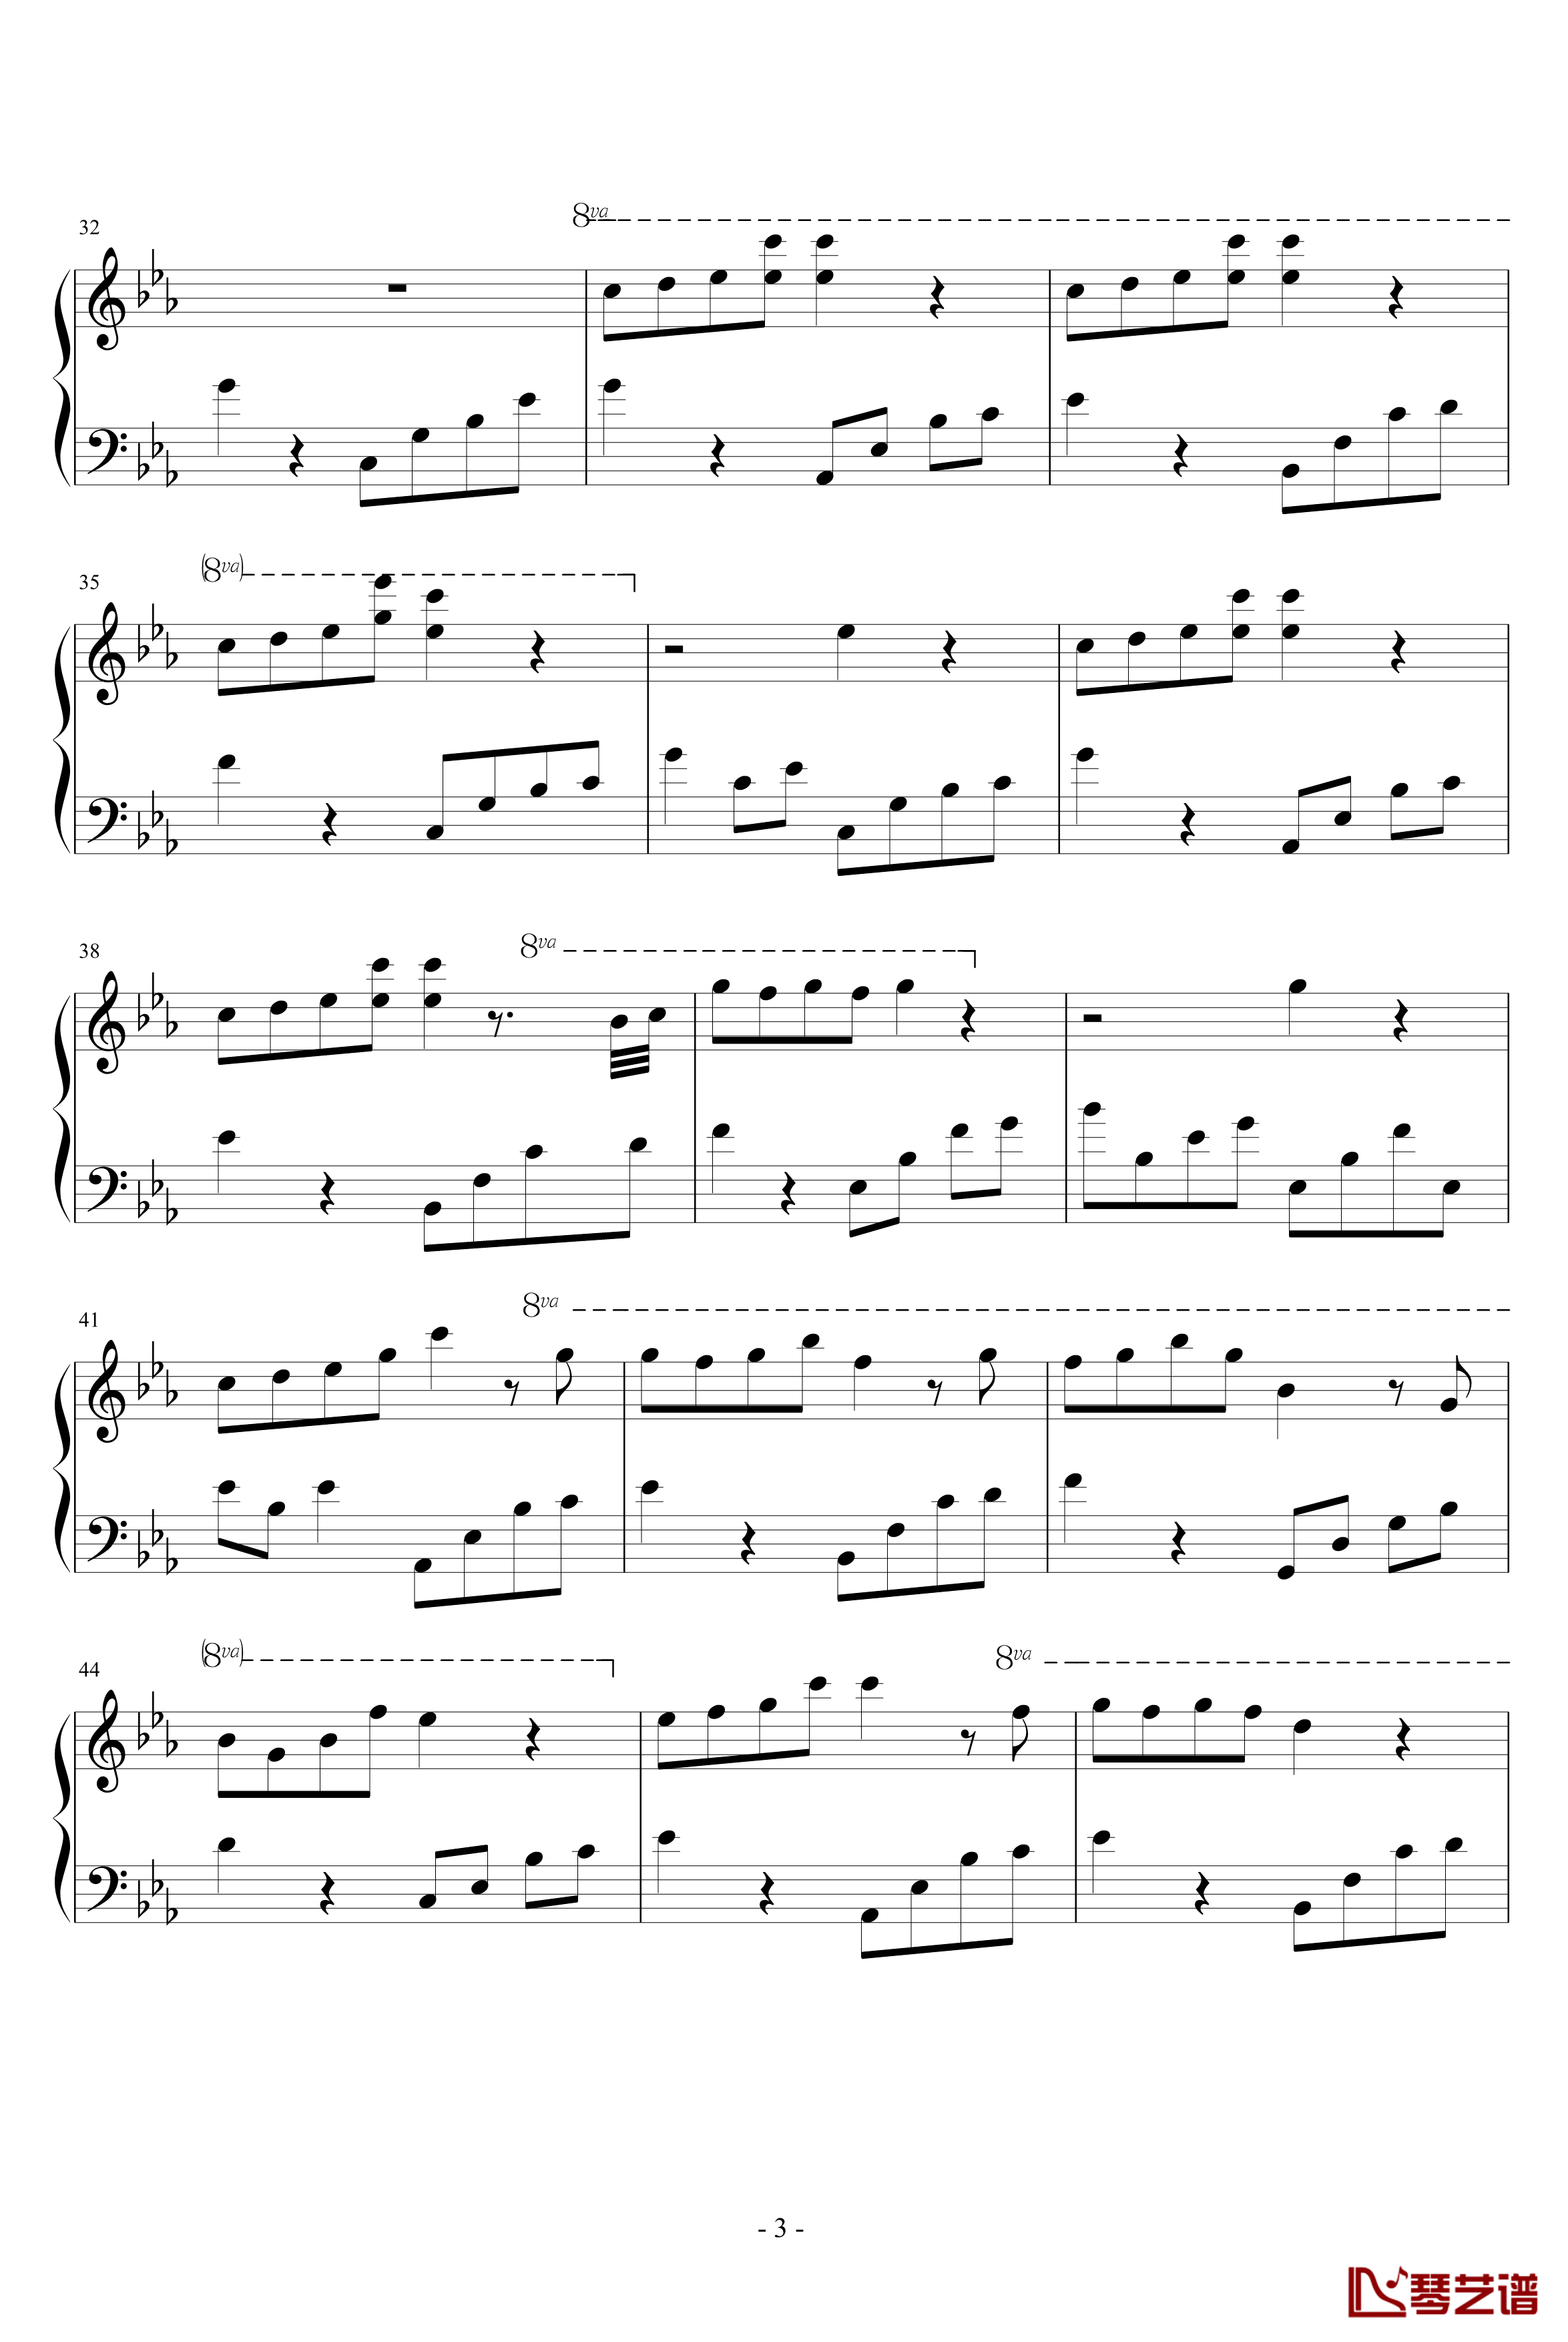 夜的钢琴曲钢琴谱-五-其它分类3